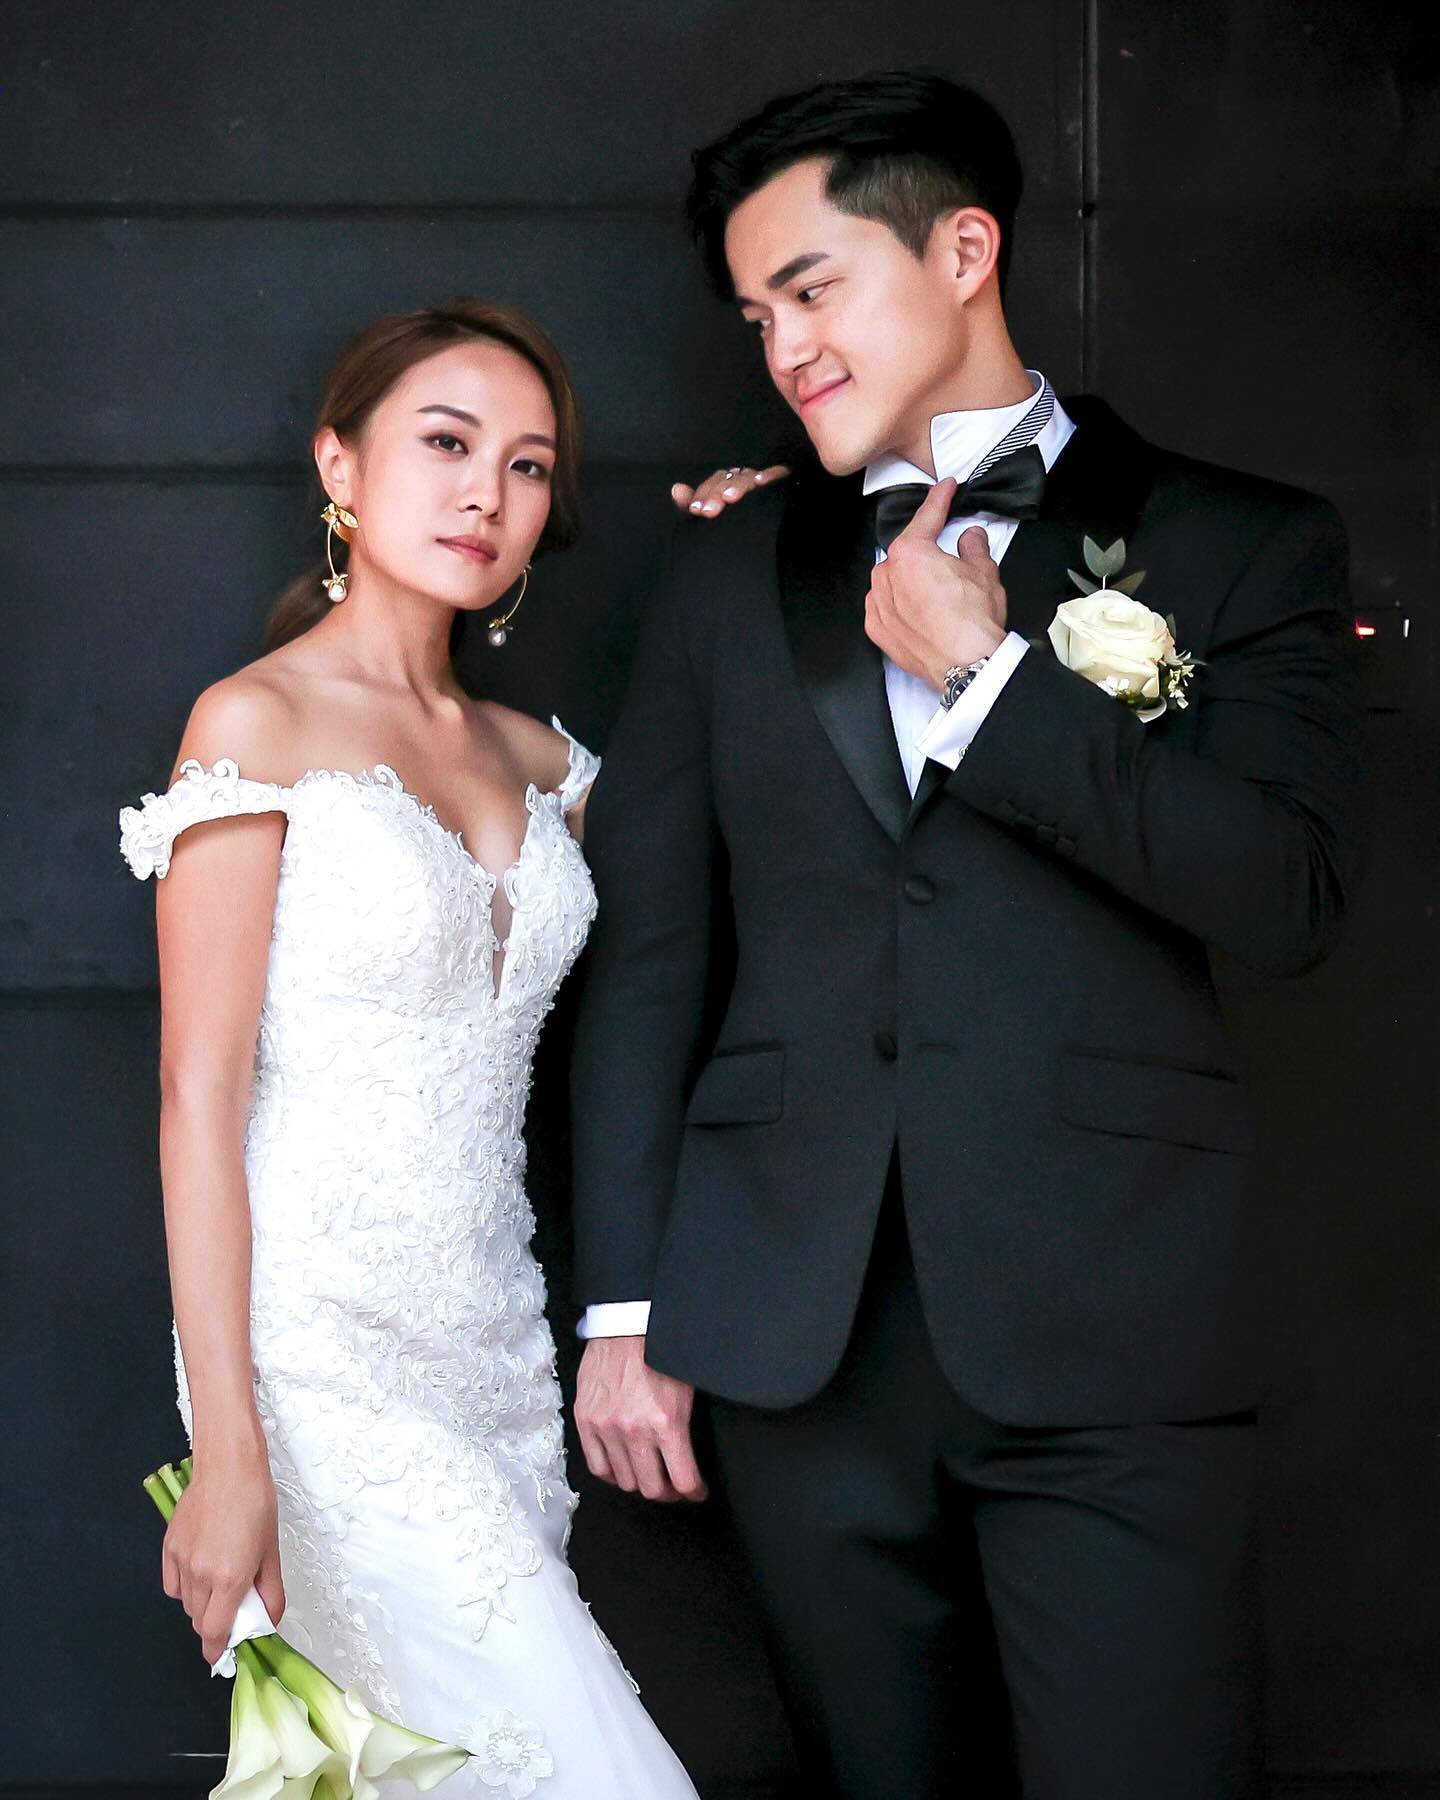 丘静雯 丘静雯去年10月嫁给了拍拖5年的男友阿枫，升呢做幸福人妻。